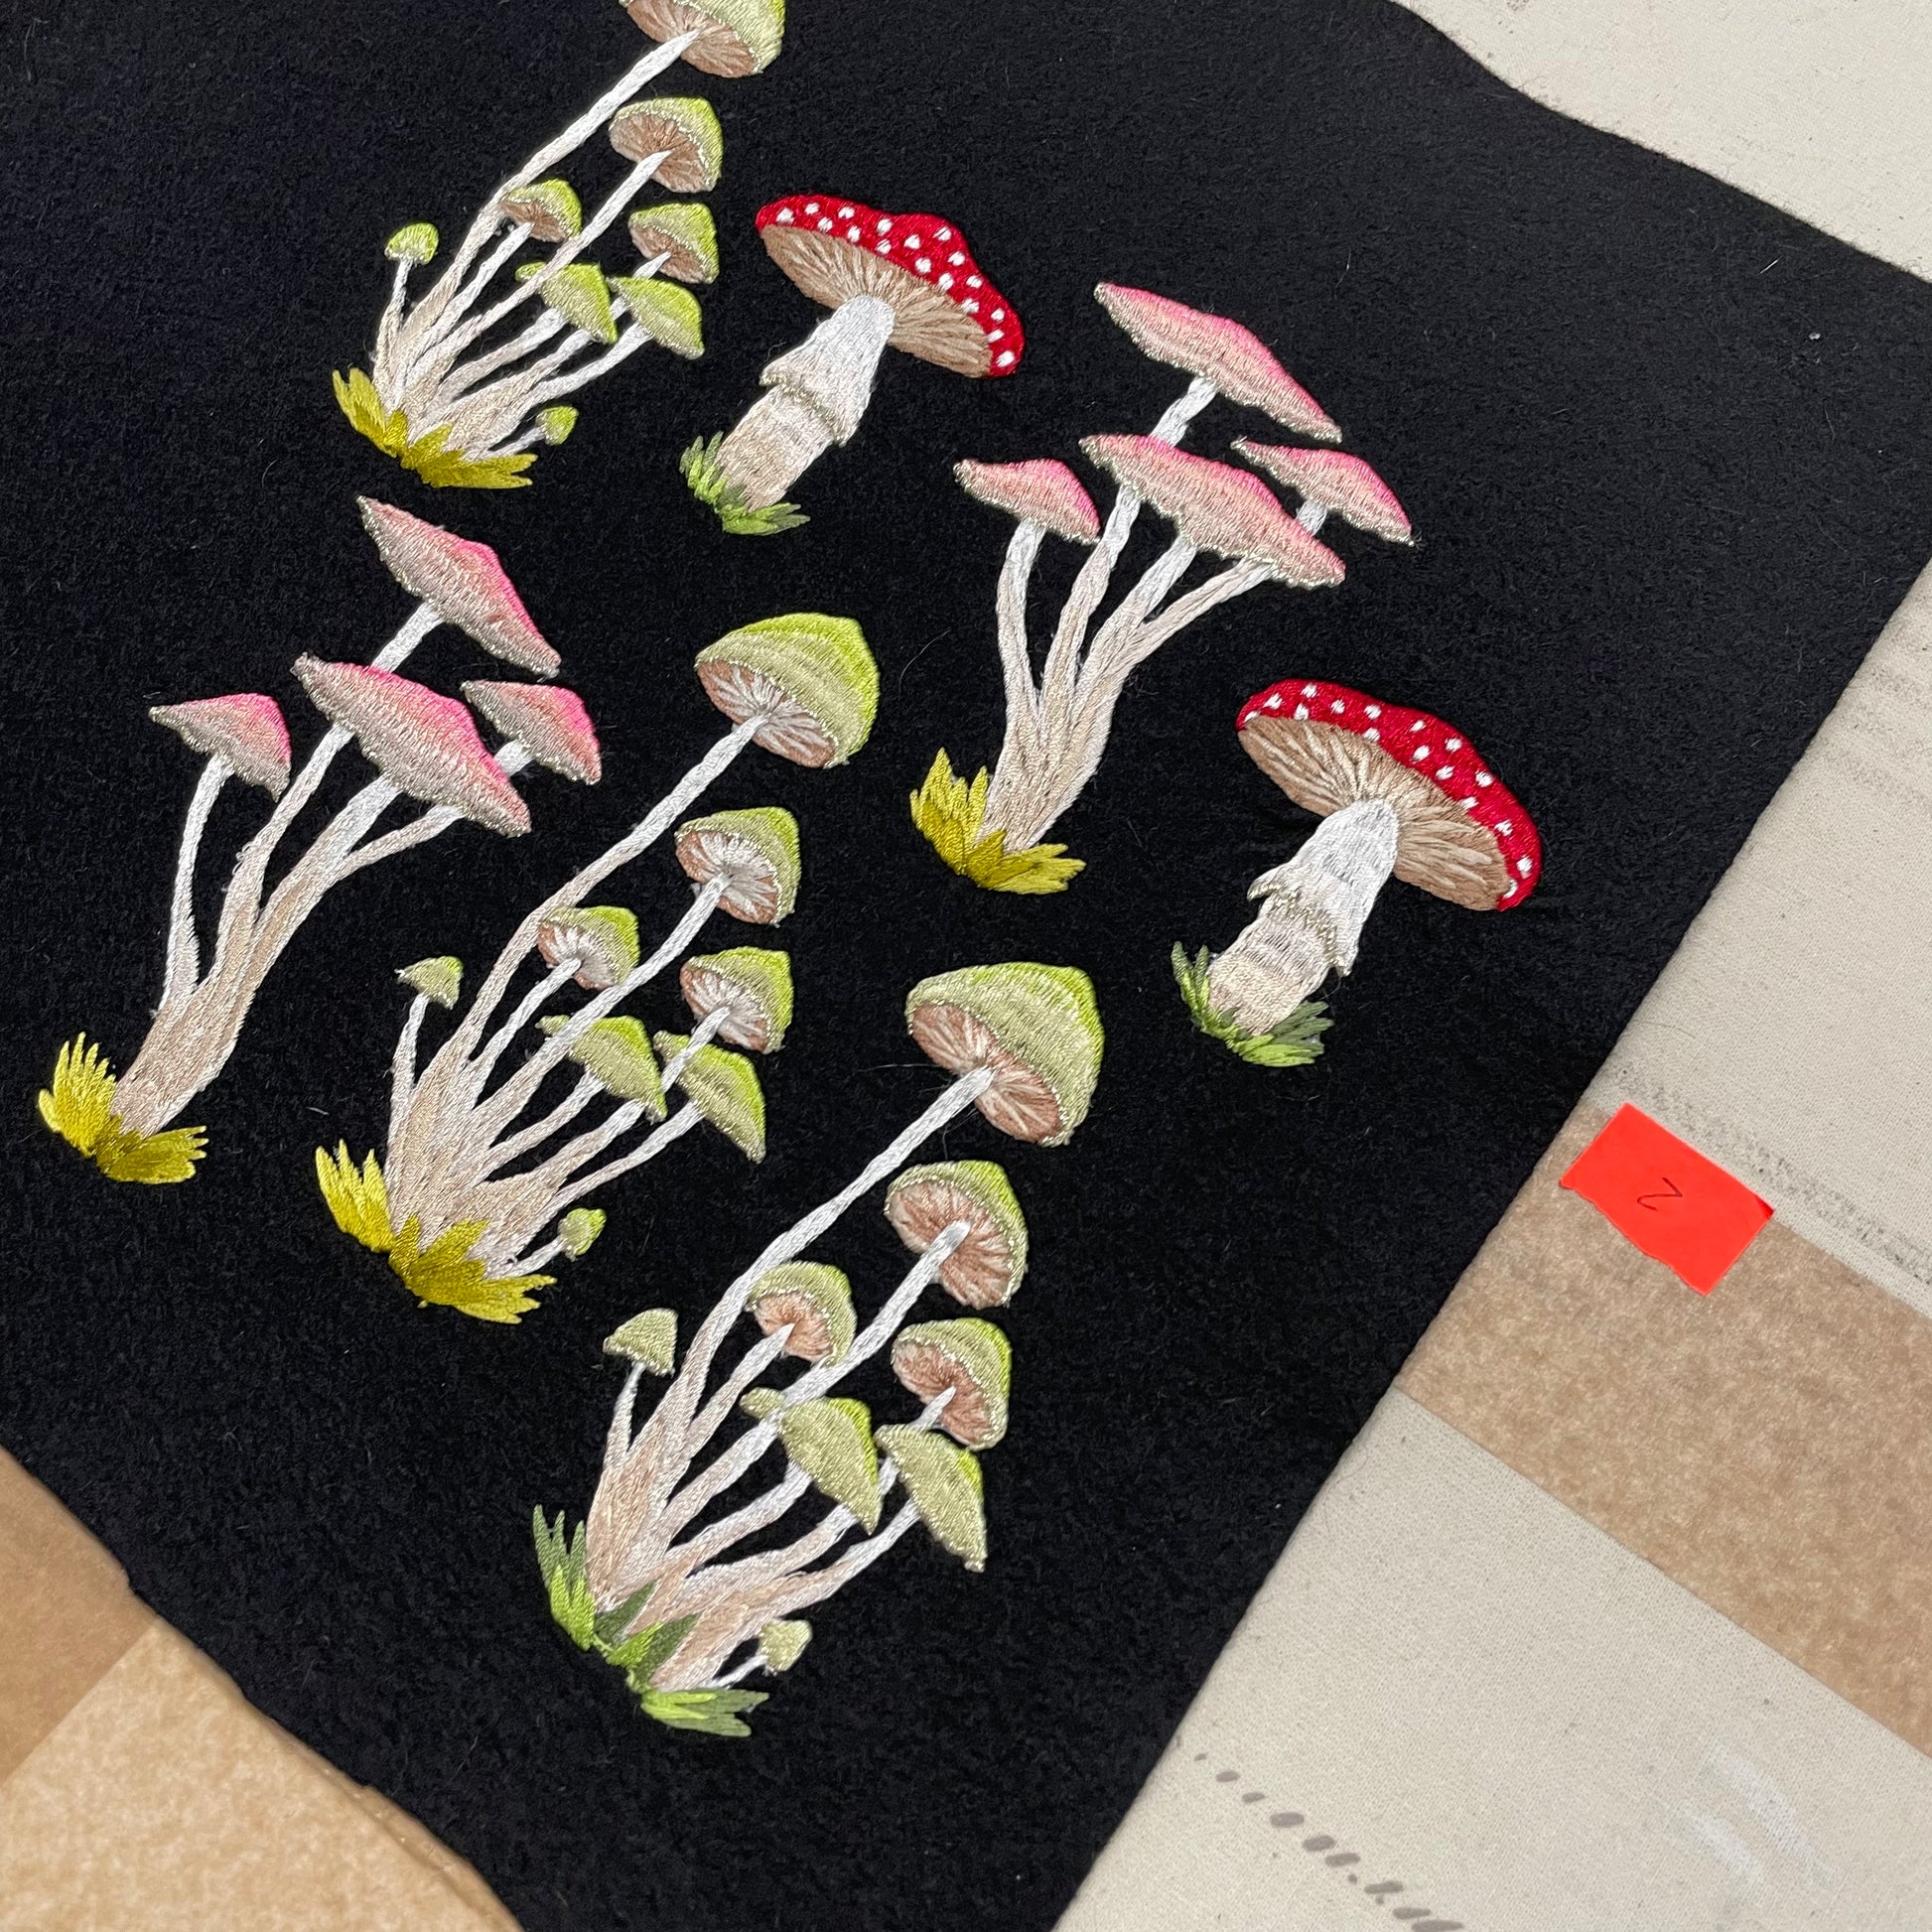 Various embroidered mushroom designs on black felt